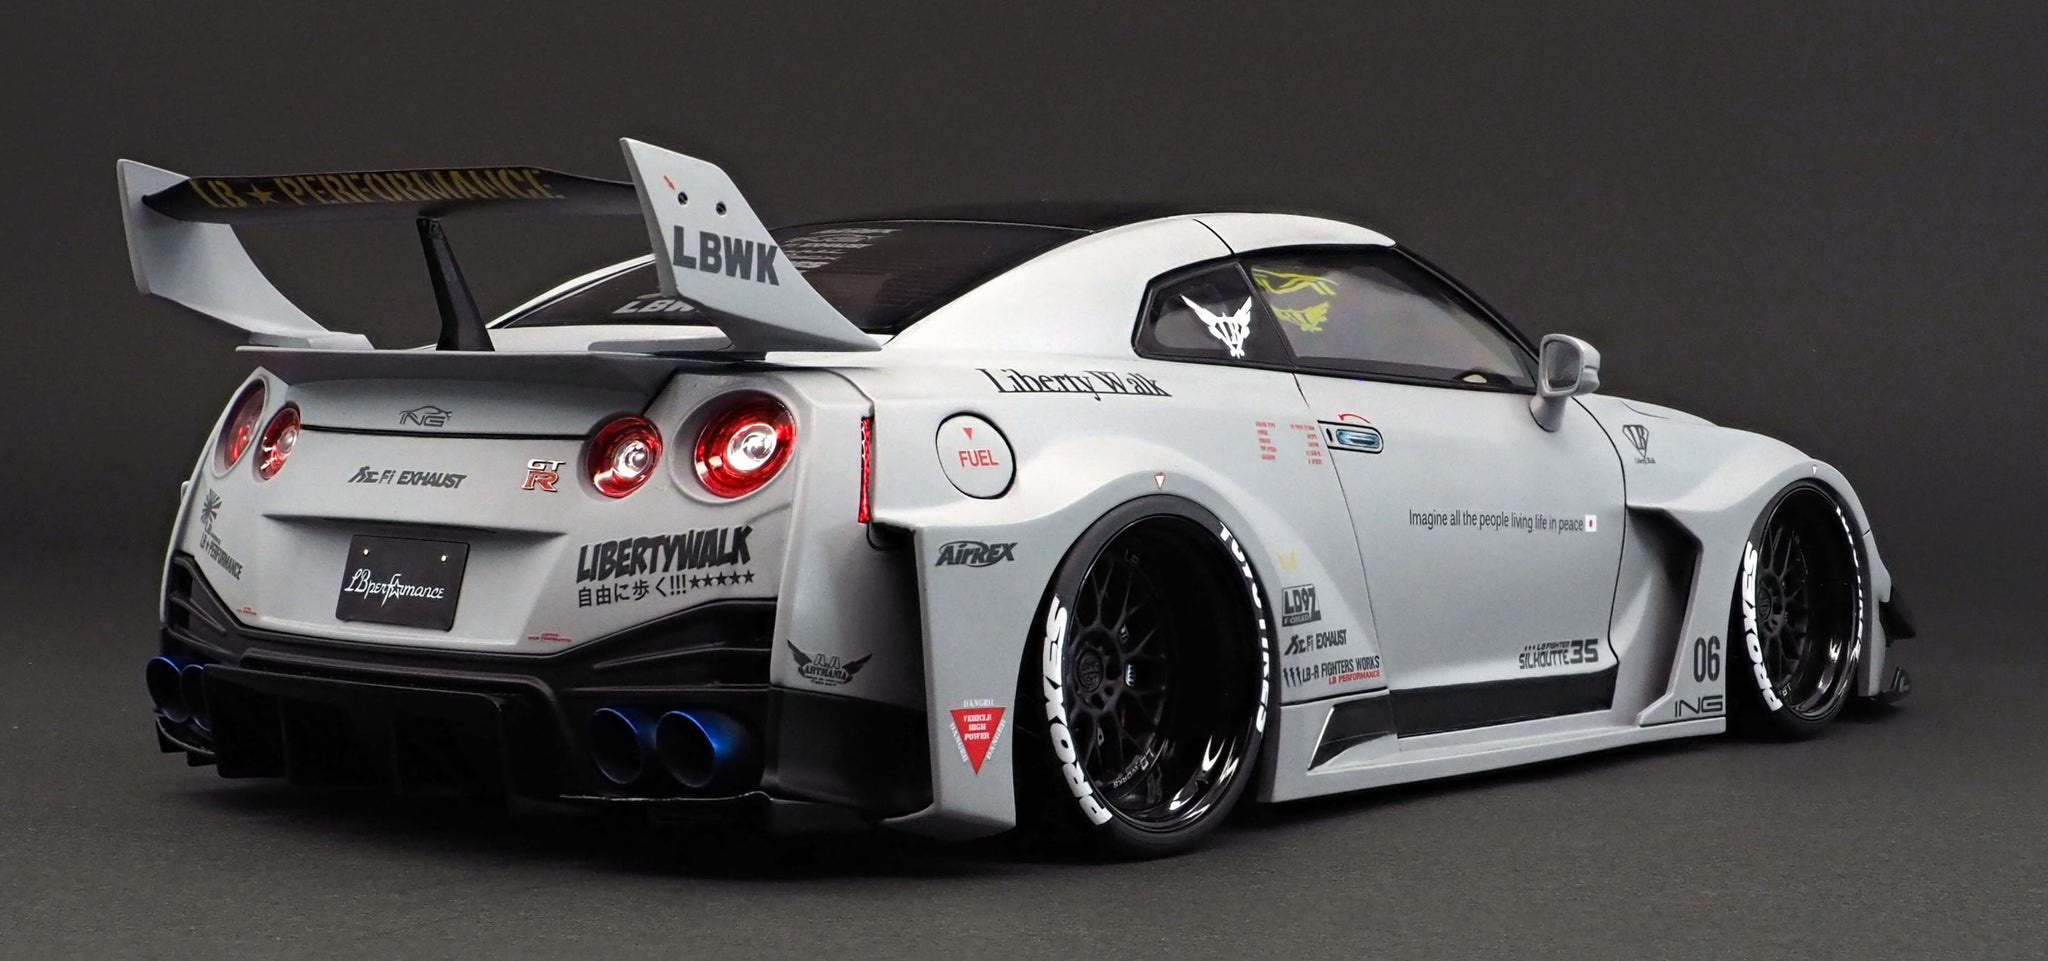 1:18 LB-Silhouette WORKS GT Nissan 35GT-RR Matte Gray - Pole Position